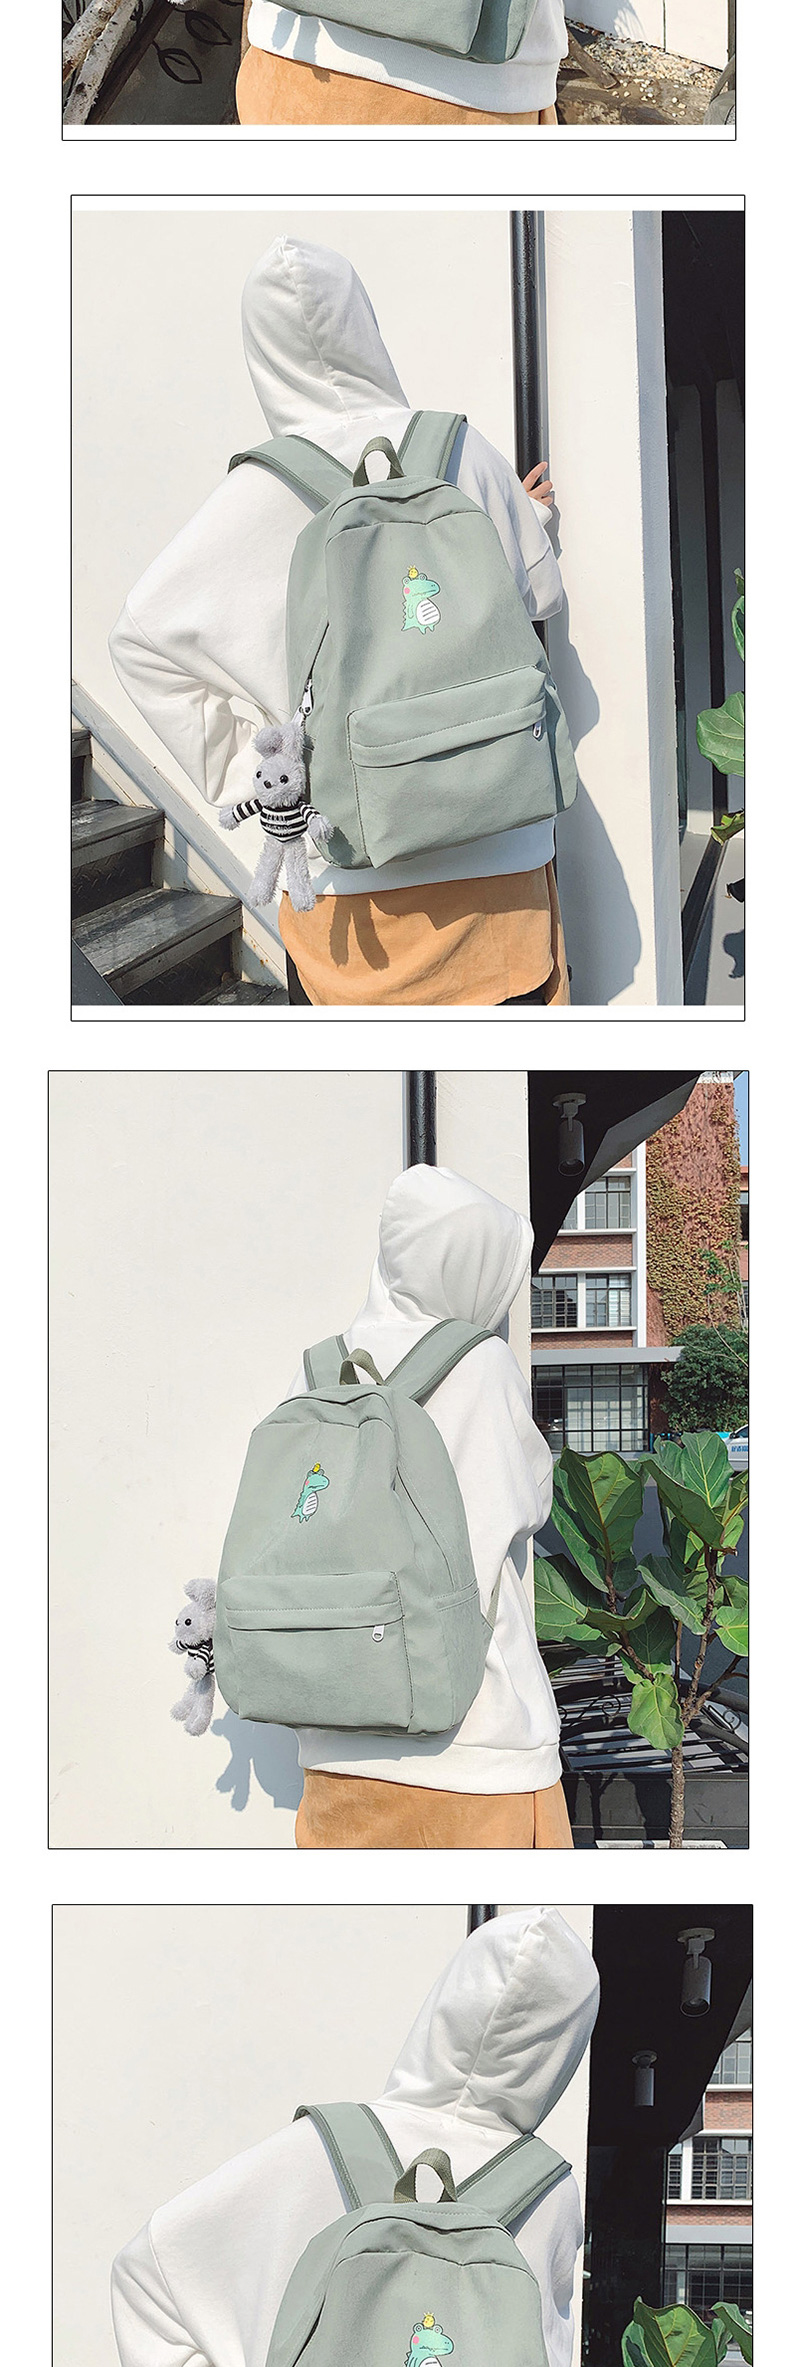 Fashion Khaki Printed Crocodile Backpack,Backpack